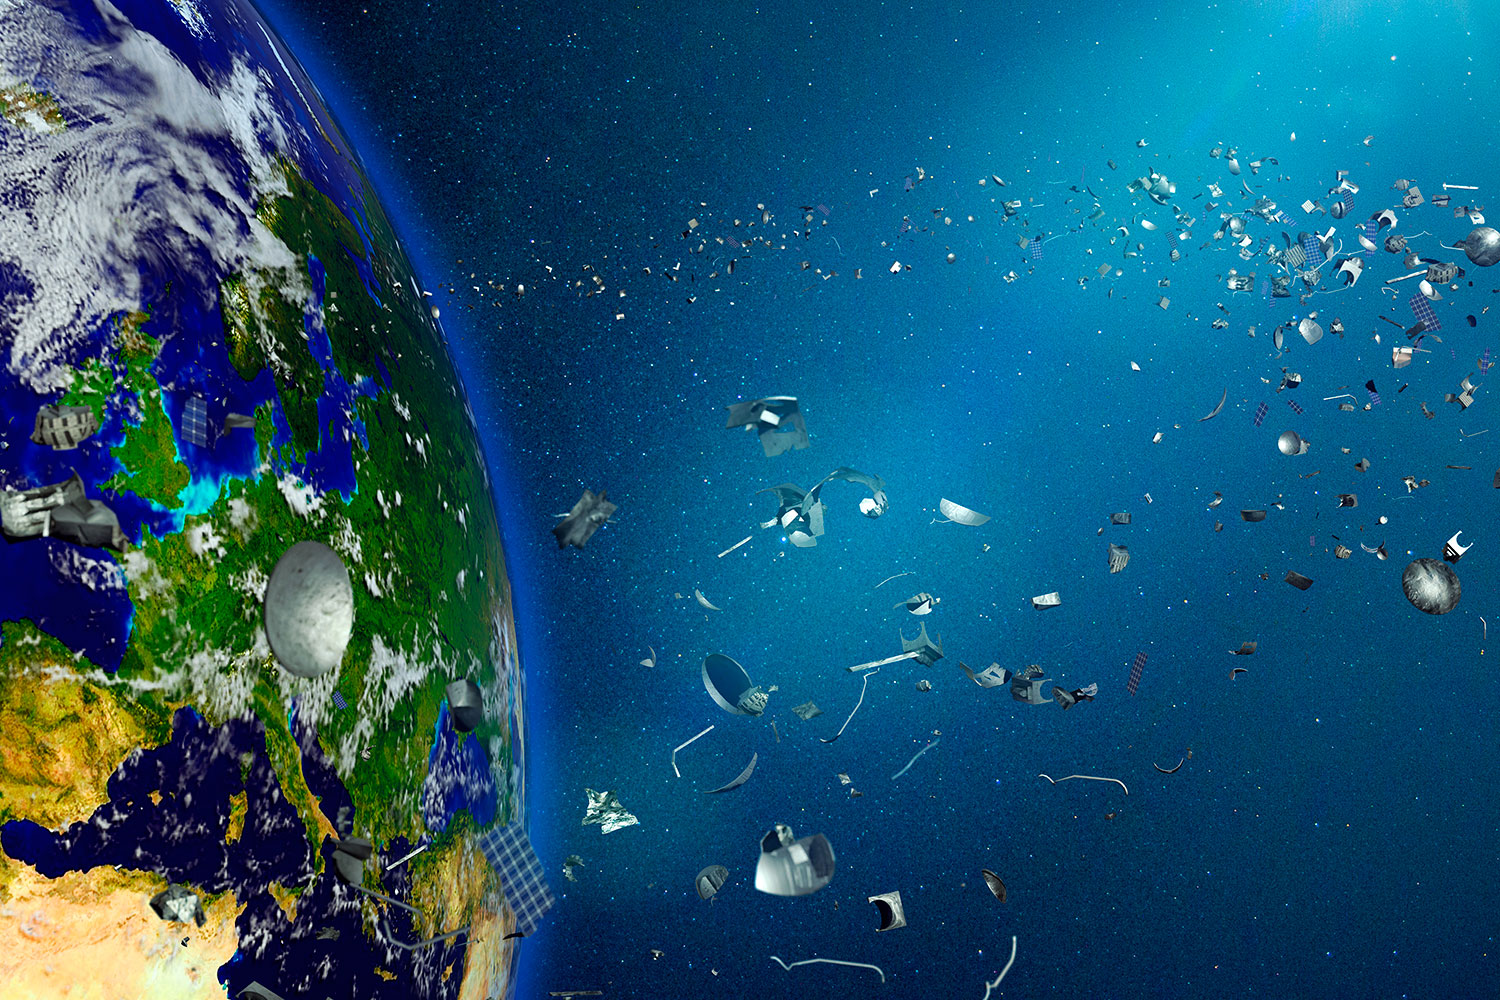 basura espacial alrededor del planeta Tierra